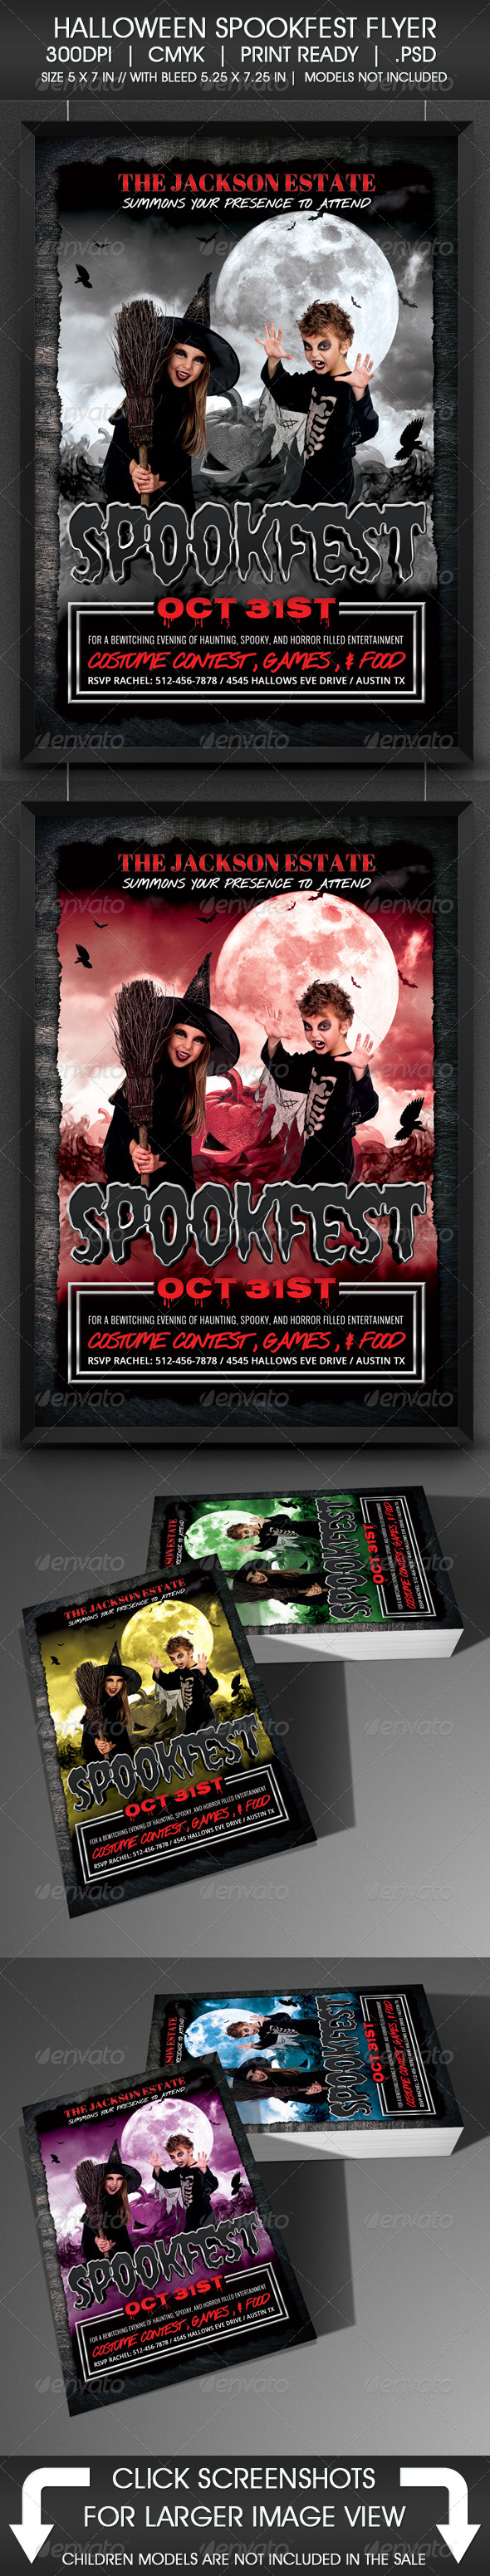 Halloween Spookfest Flyer